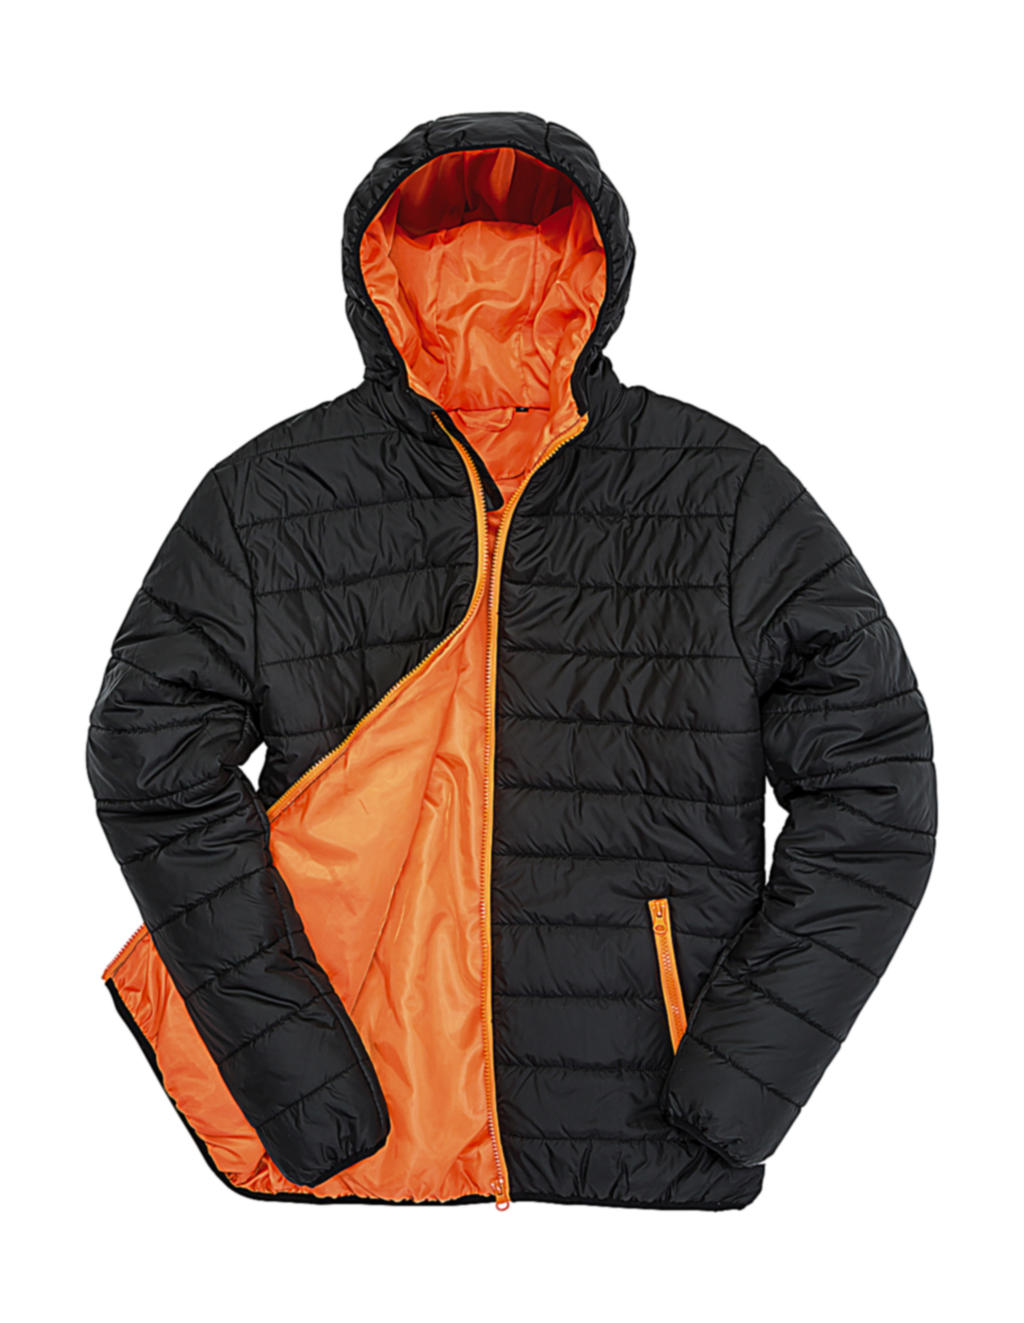  Soft Padded Jacket in Farbe Black/Orange